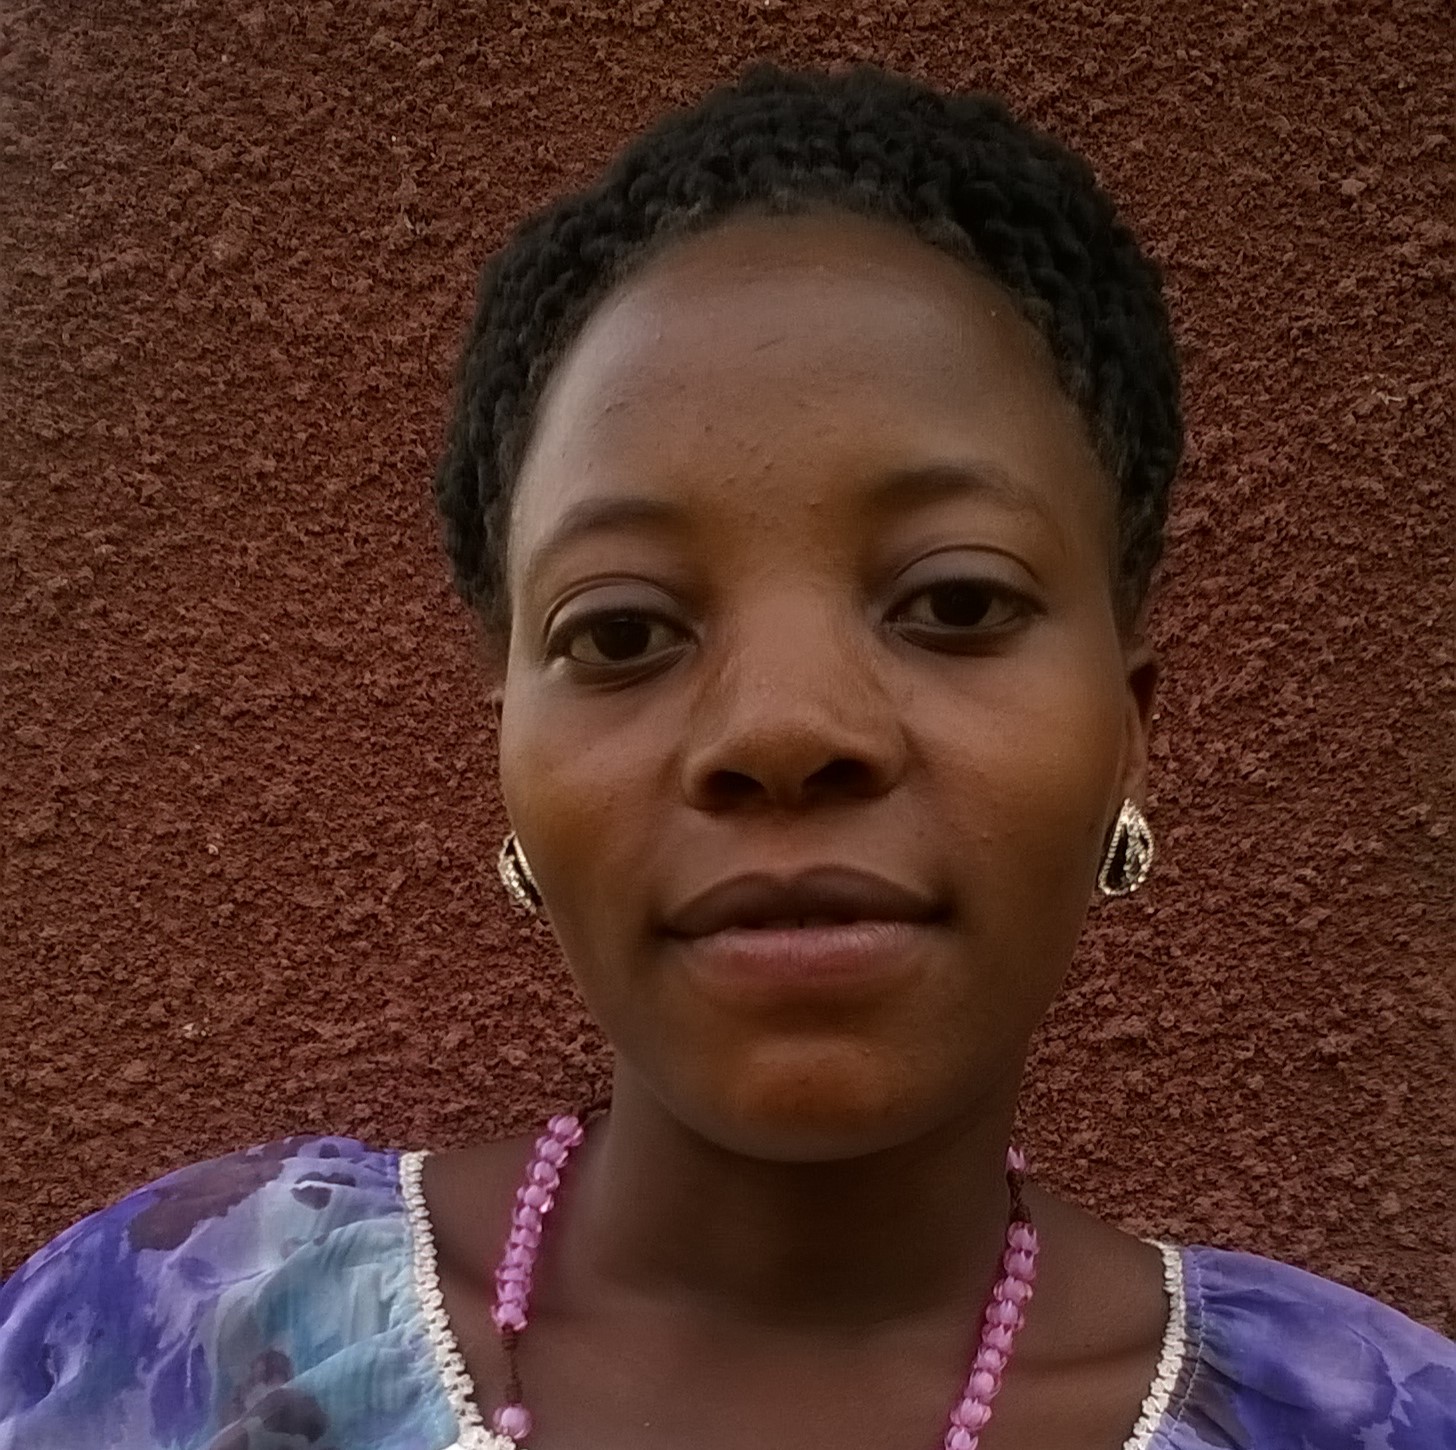 Ms. Nakaggwa Oliver